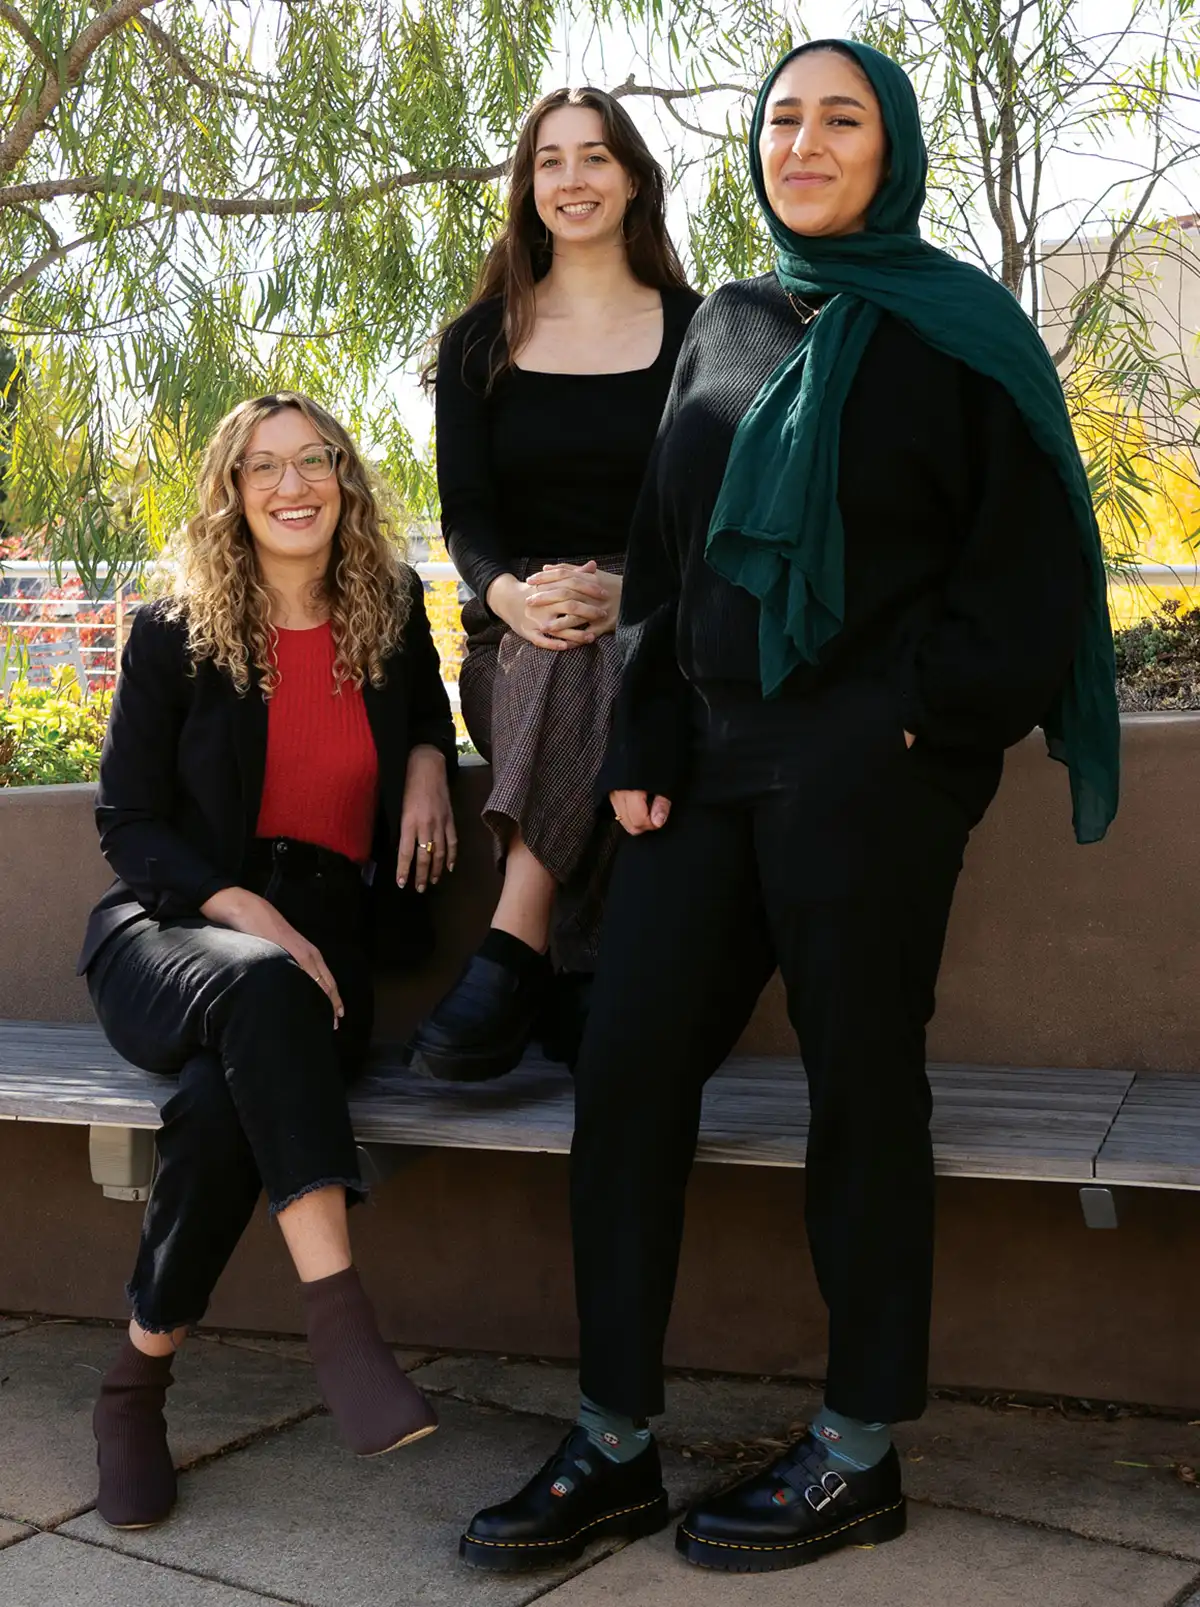 Mia Stange, Sophia Fenn, and Mariam Elbakr posing outside campus